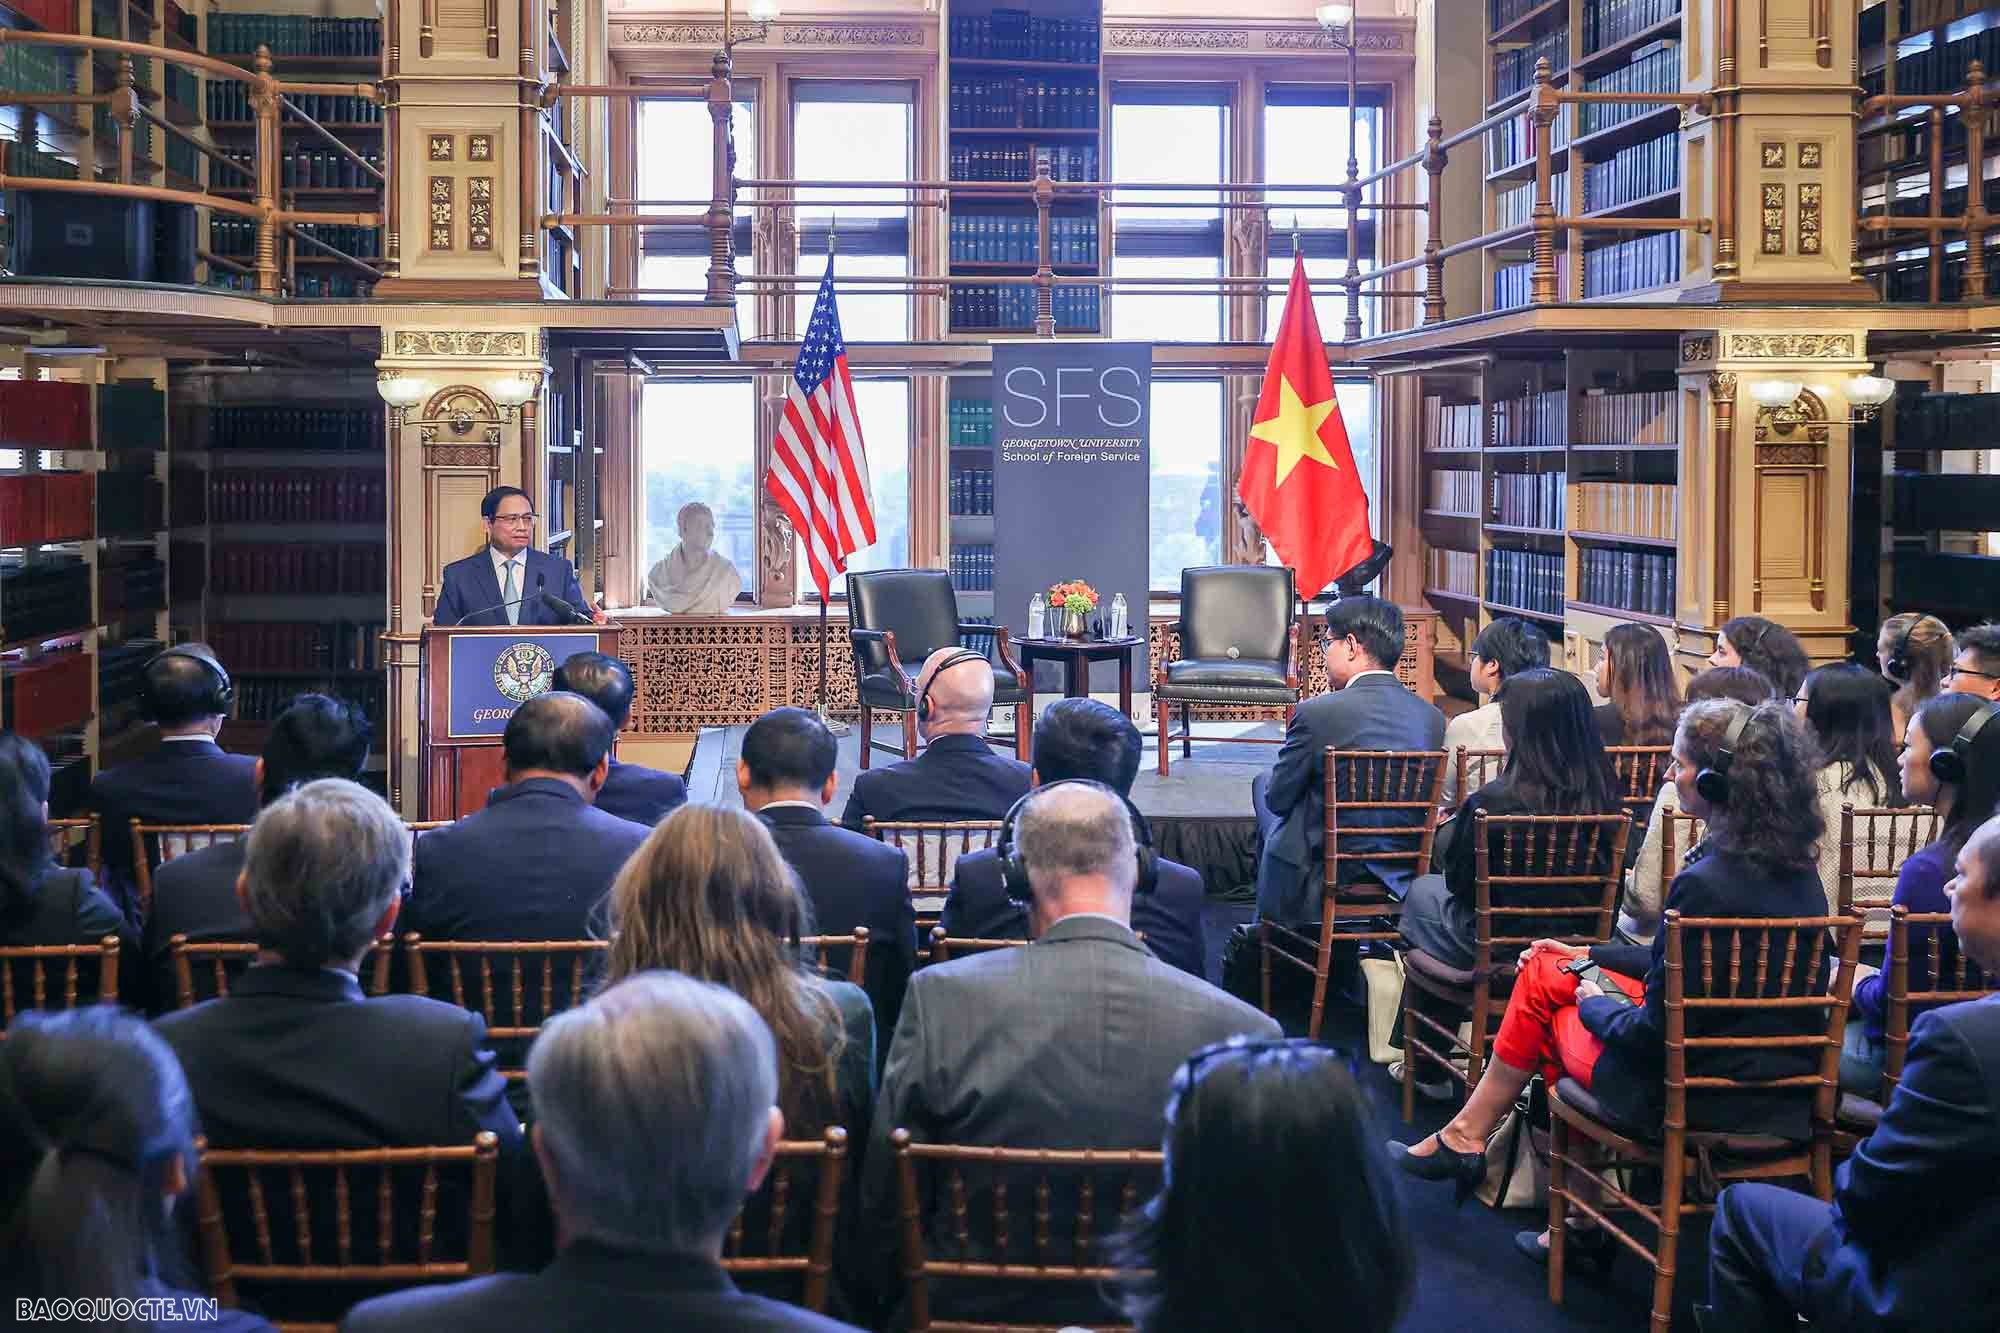 Ba vấn đề trong bài phát biểu chính sách của Thủ tướng Phạm Minh Chính tại Đại học Georgetown